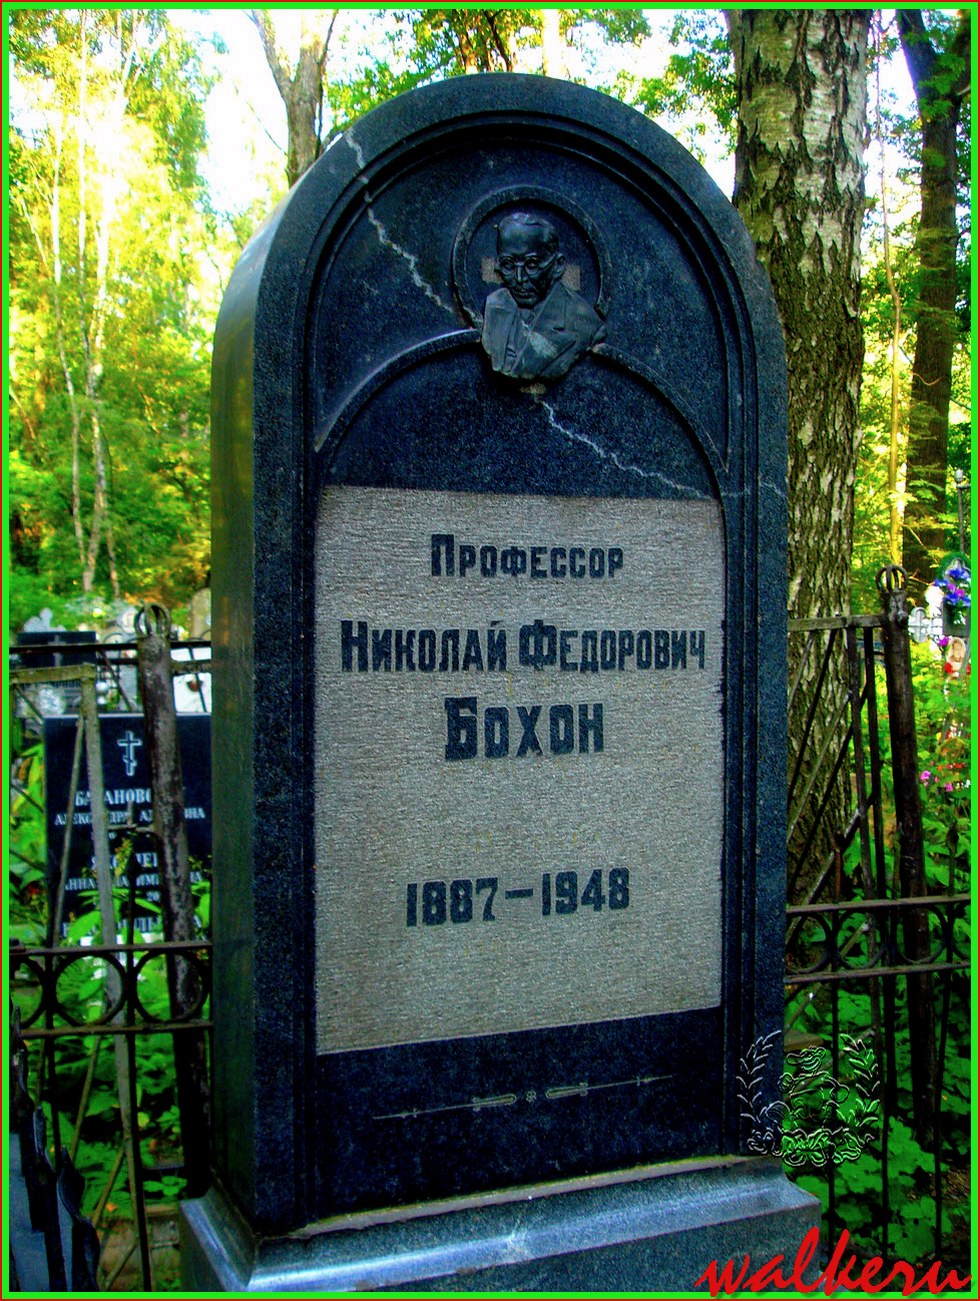 Могила Бохона Н.Ф. на Большеохтинском кладбище